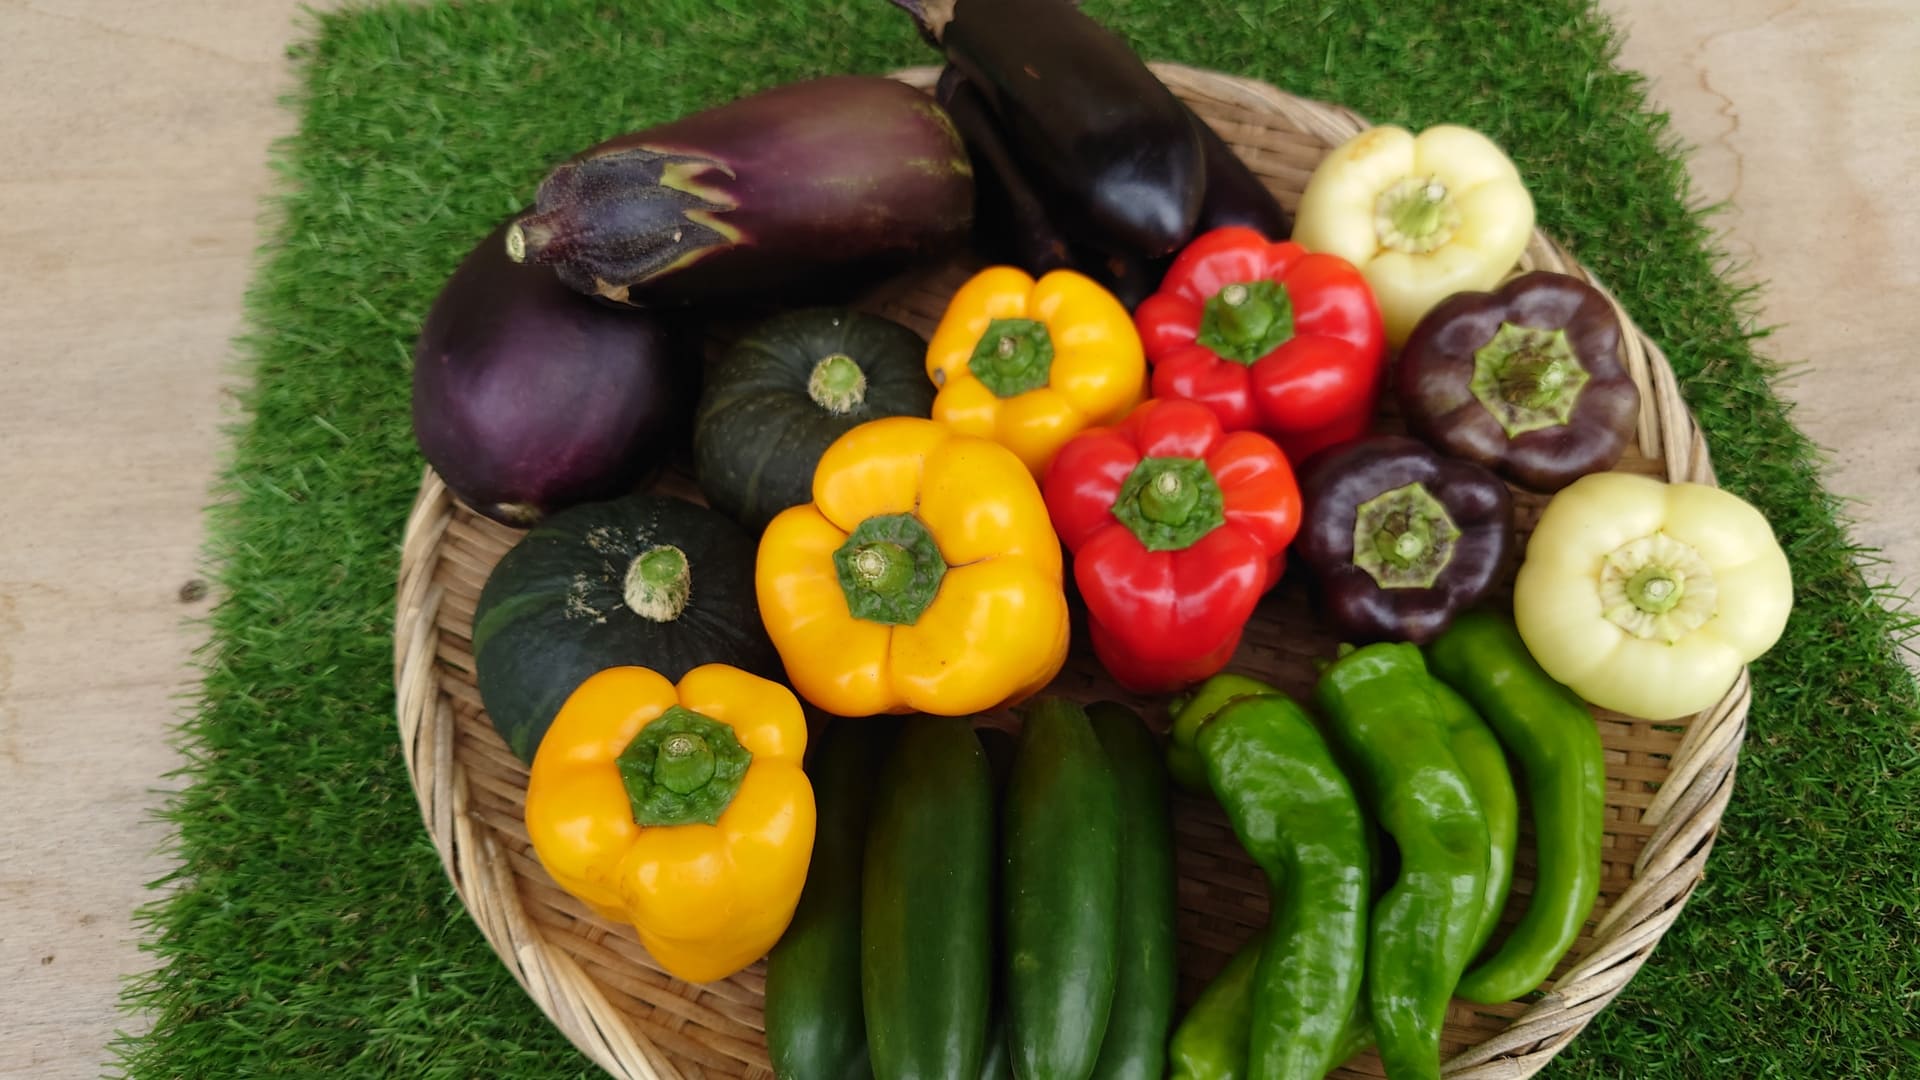 農園で採れた野菜の一部です。パプリカは赤・黄・黒・白といろいろな色を育てています。ありすでは少し変わった野菜を選ぶことが多いです。黄色くて丸いズッキーニやUＦＯ